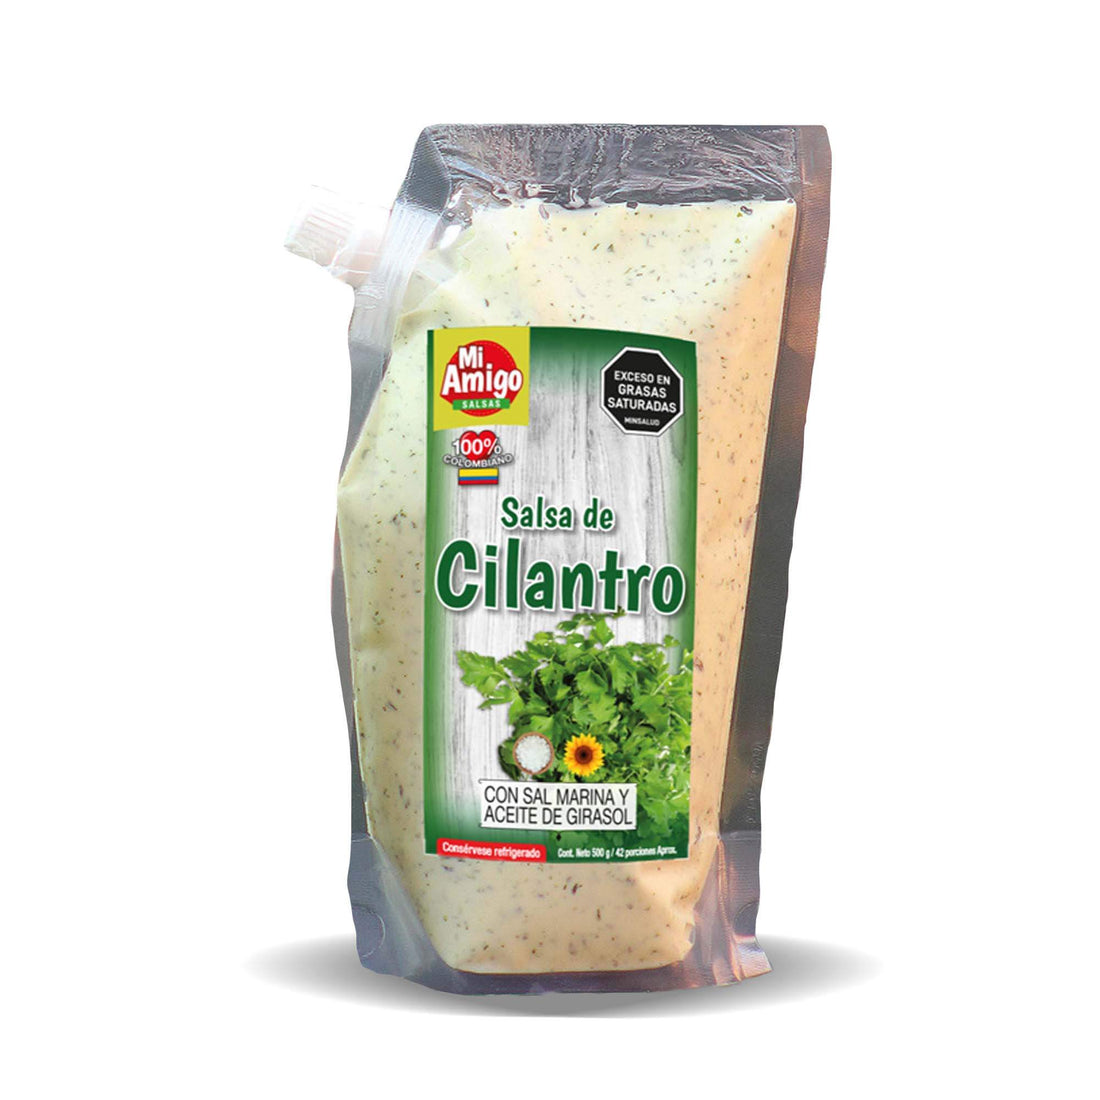 Salsa de Cilantro x 240gr: Fotografía de salsa de cilantro en envase de 240 gramos.